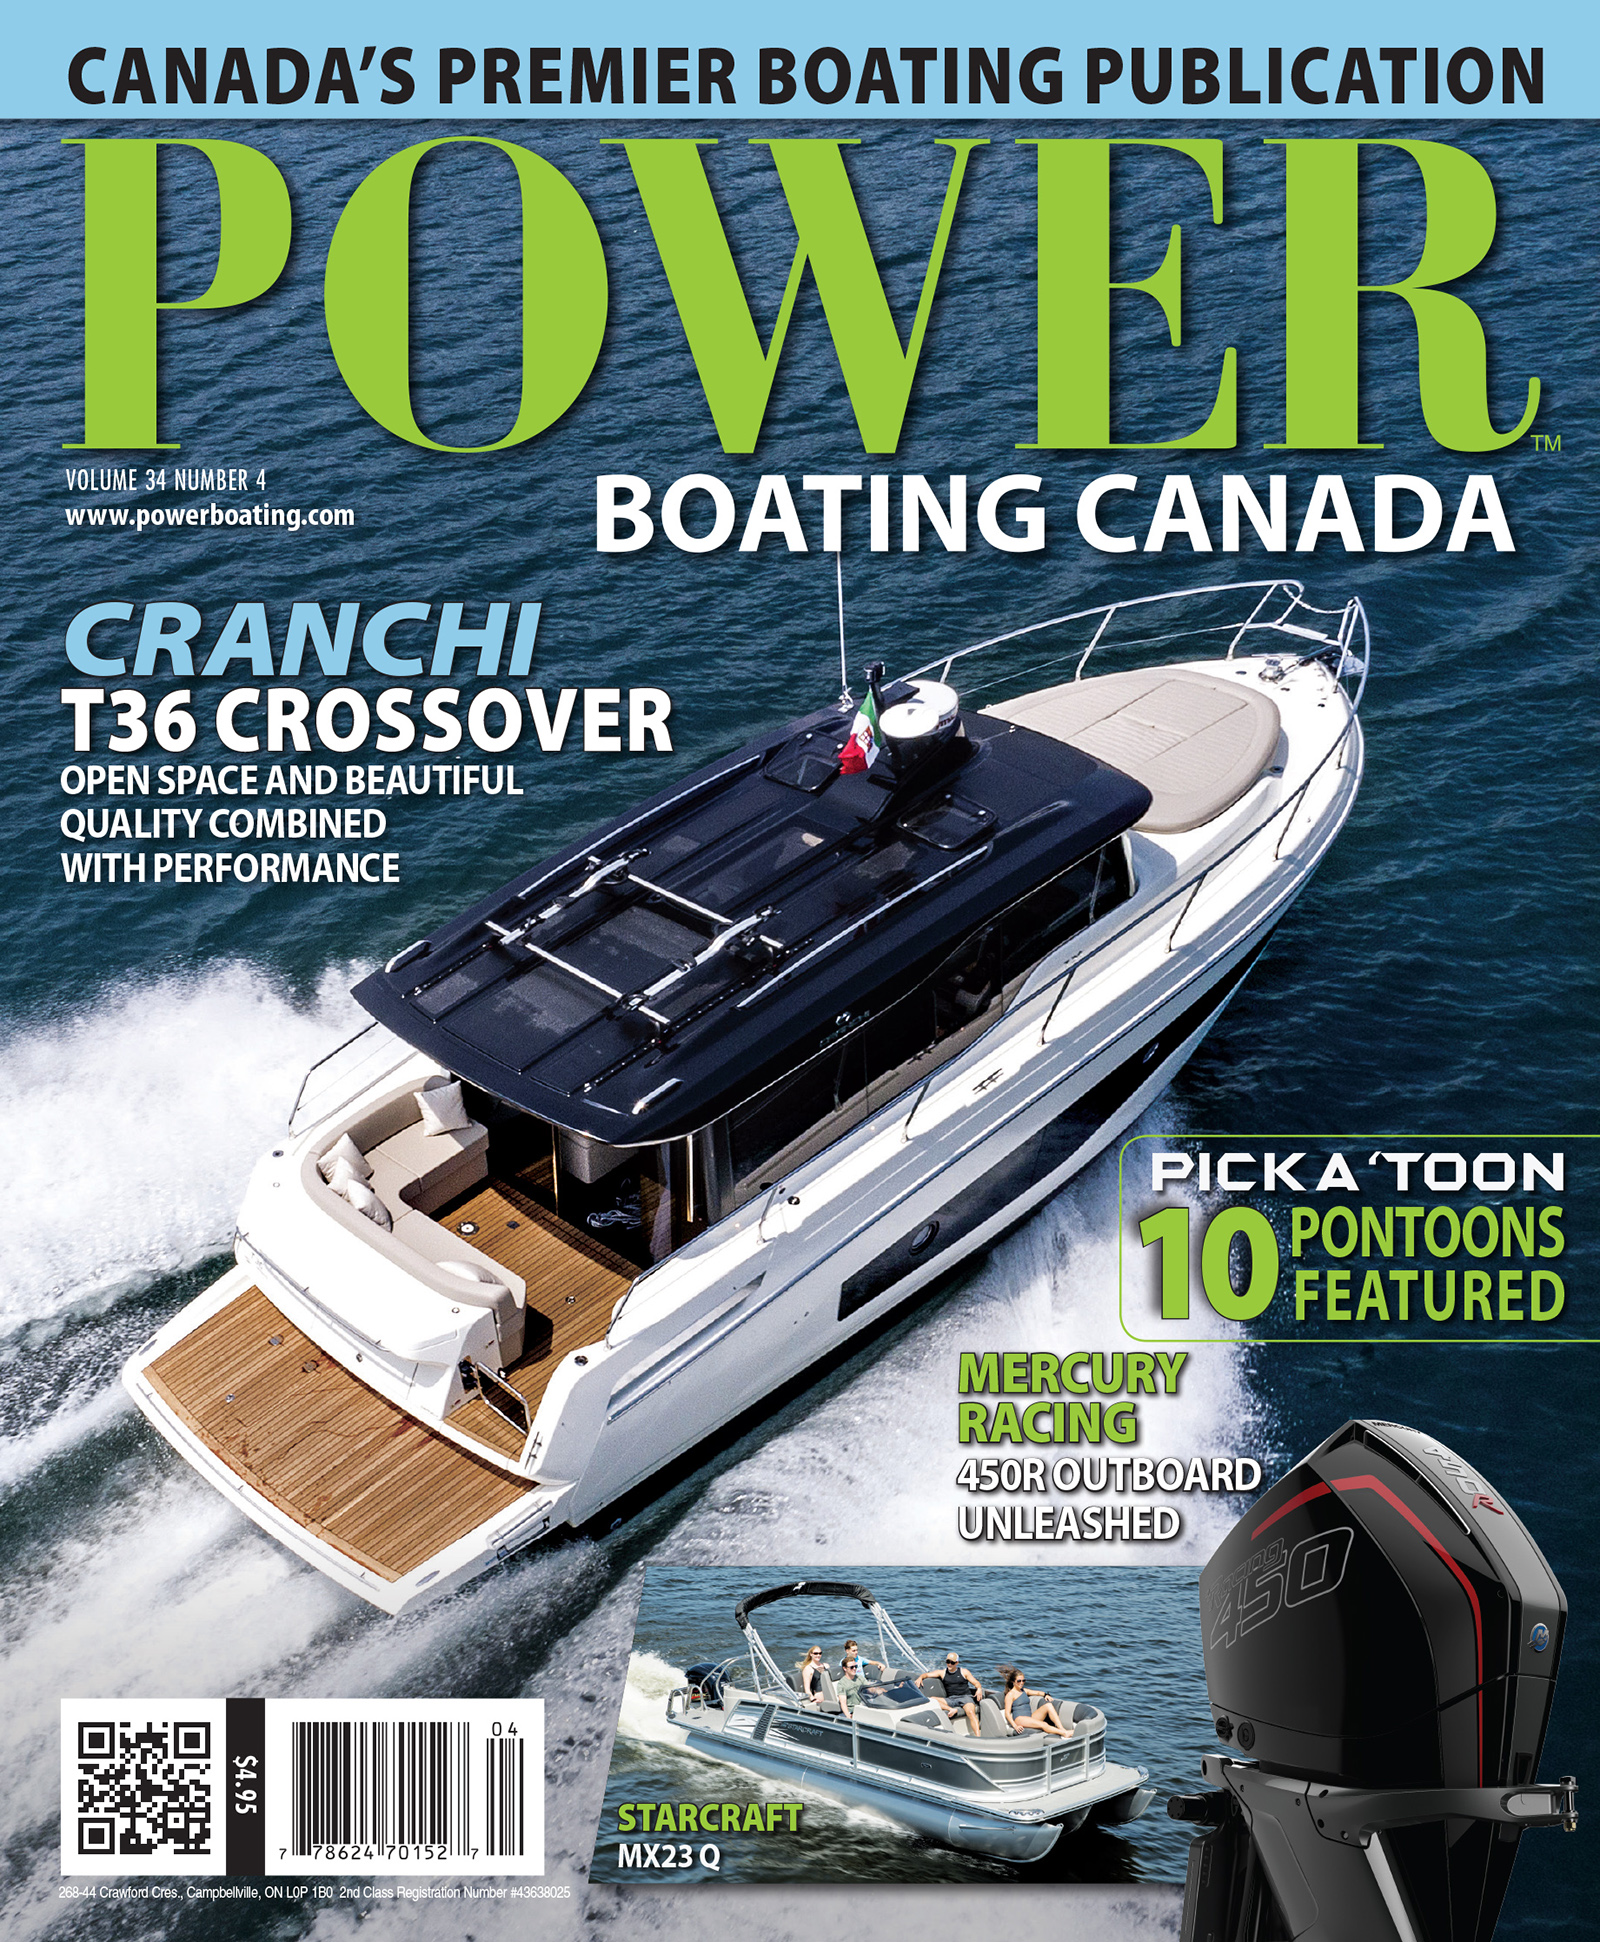 powerboating magazine